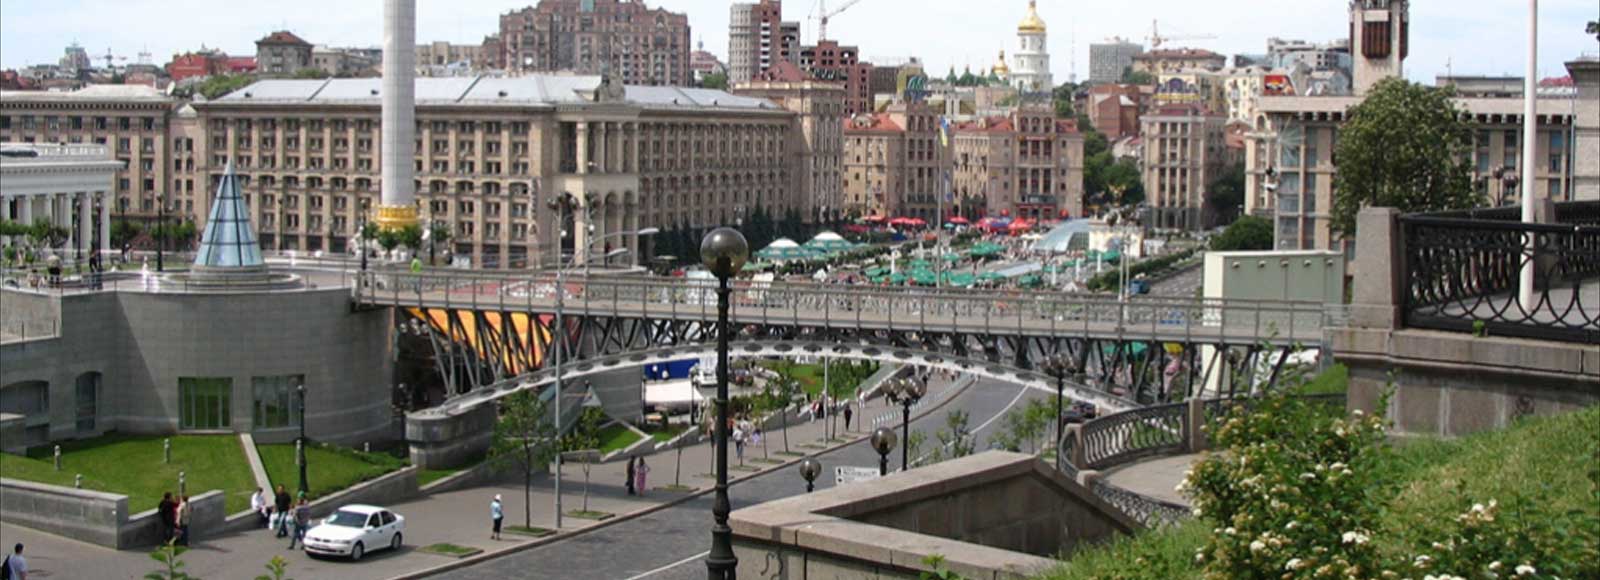 Ofertas de Traslados en Kiev. Traslados económicos en Kiev 